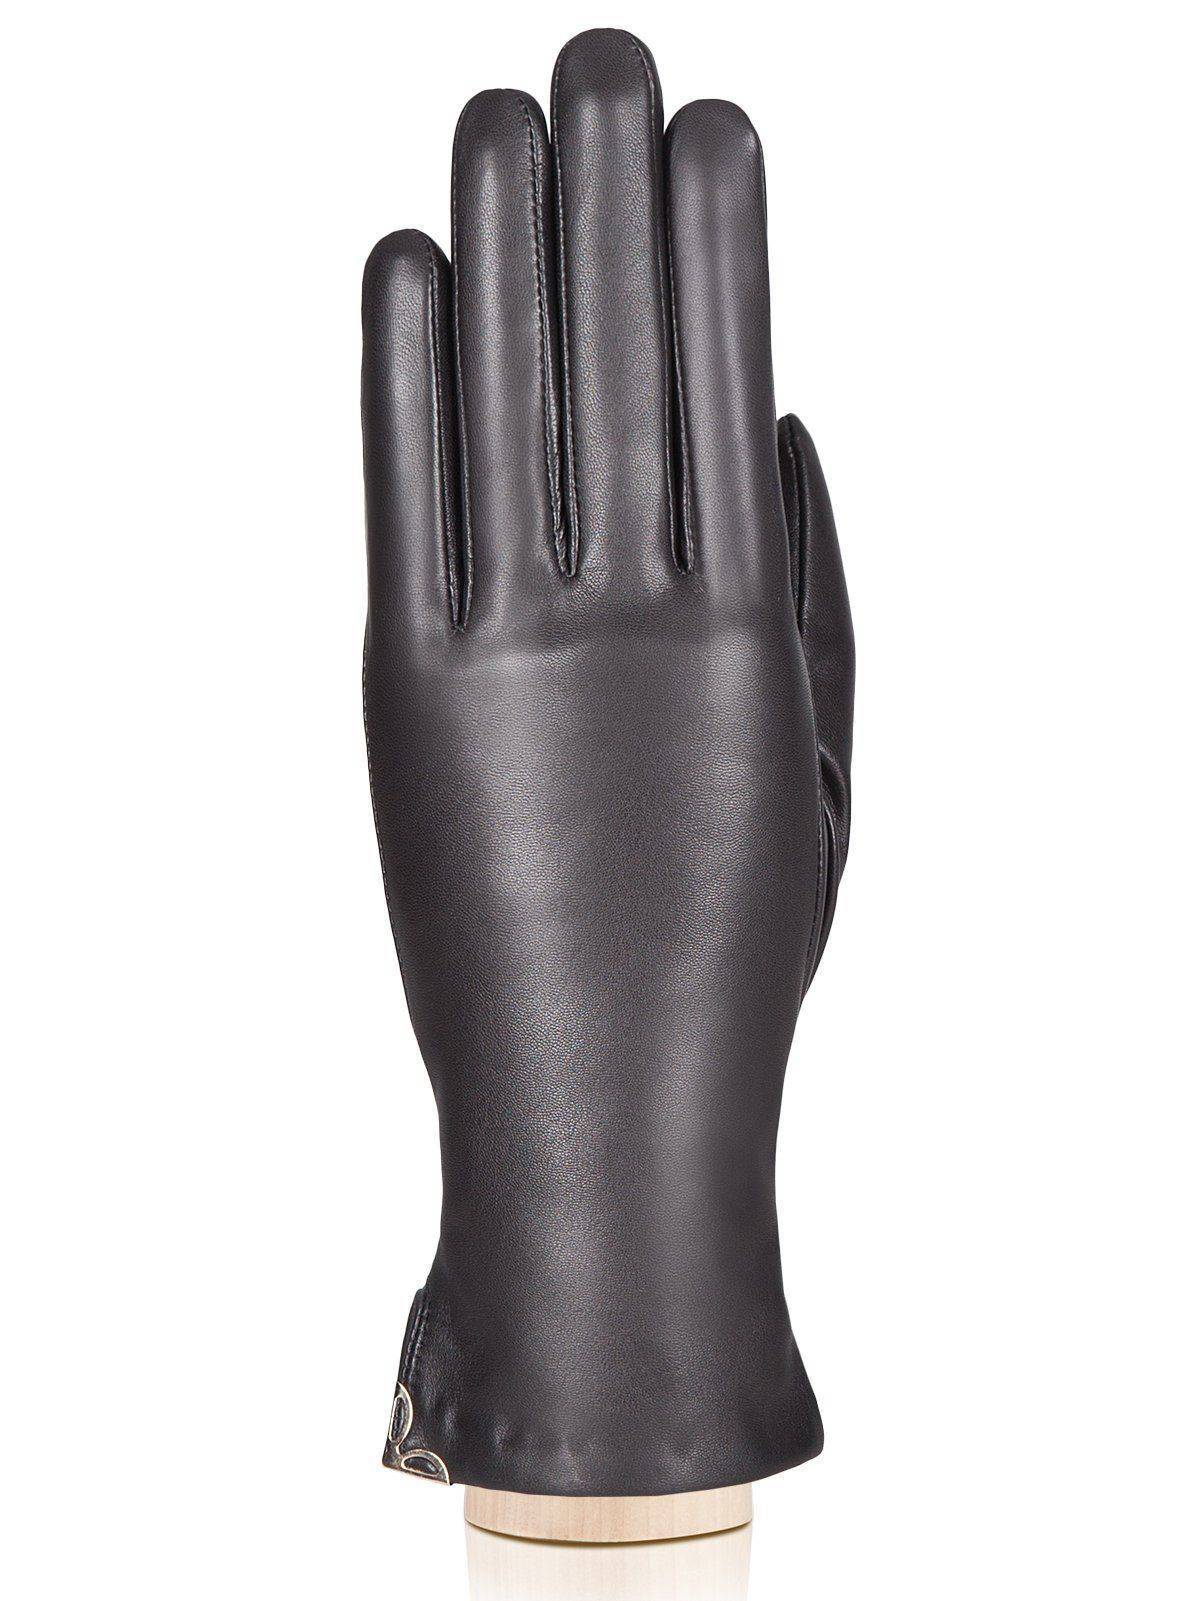 Перчатки ELEGANZZA IS953, цвет черный, размер 7.5 - фото 1